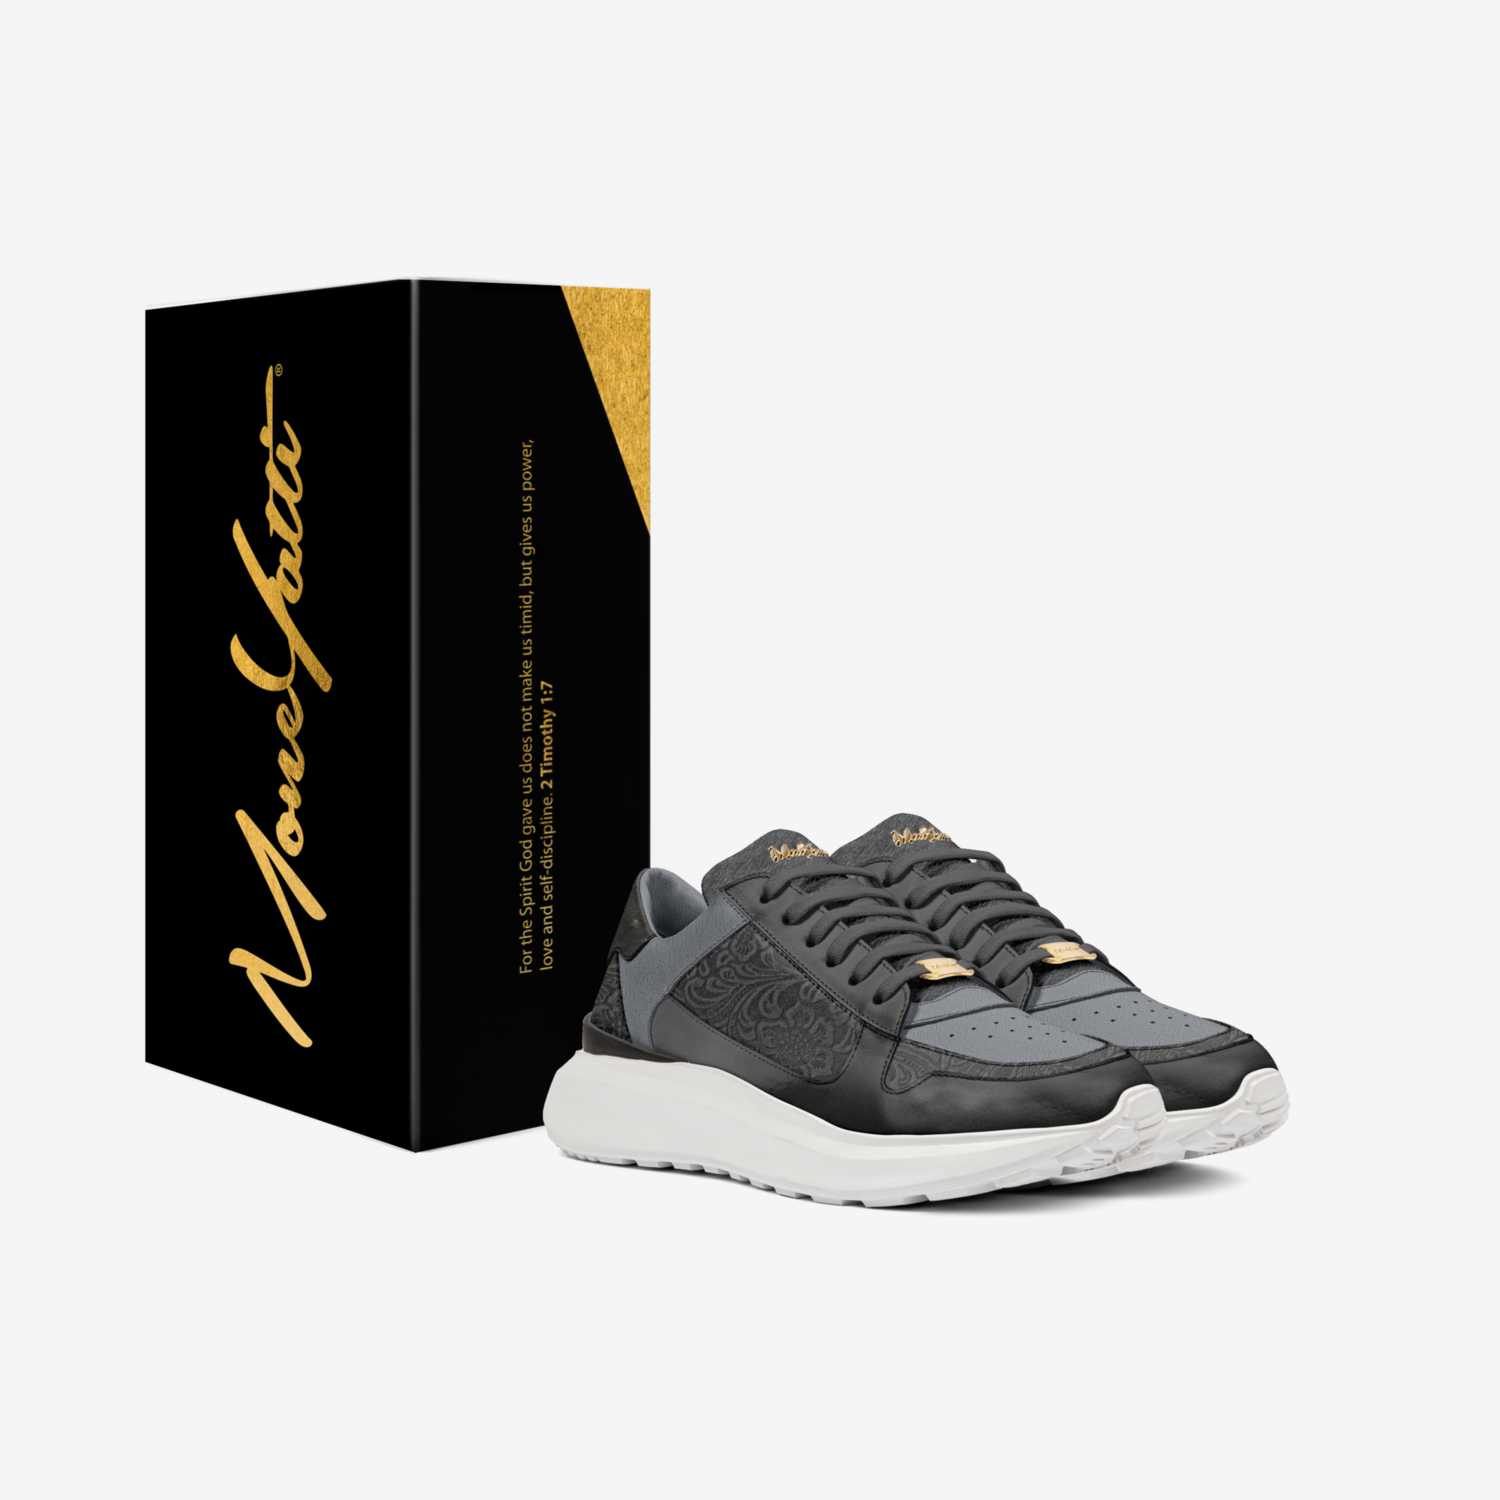  MONEYATTI CI018 custom made in Italy shoes by Moneyatti Brand | Box view